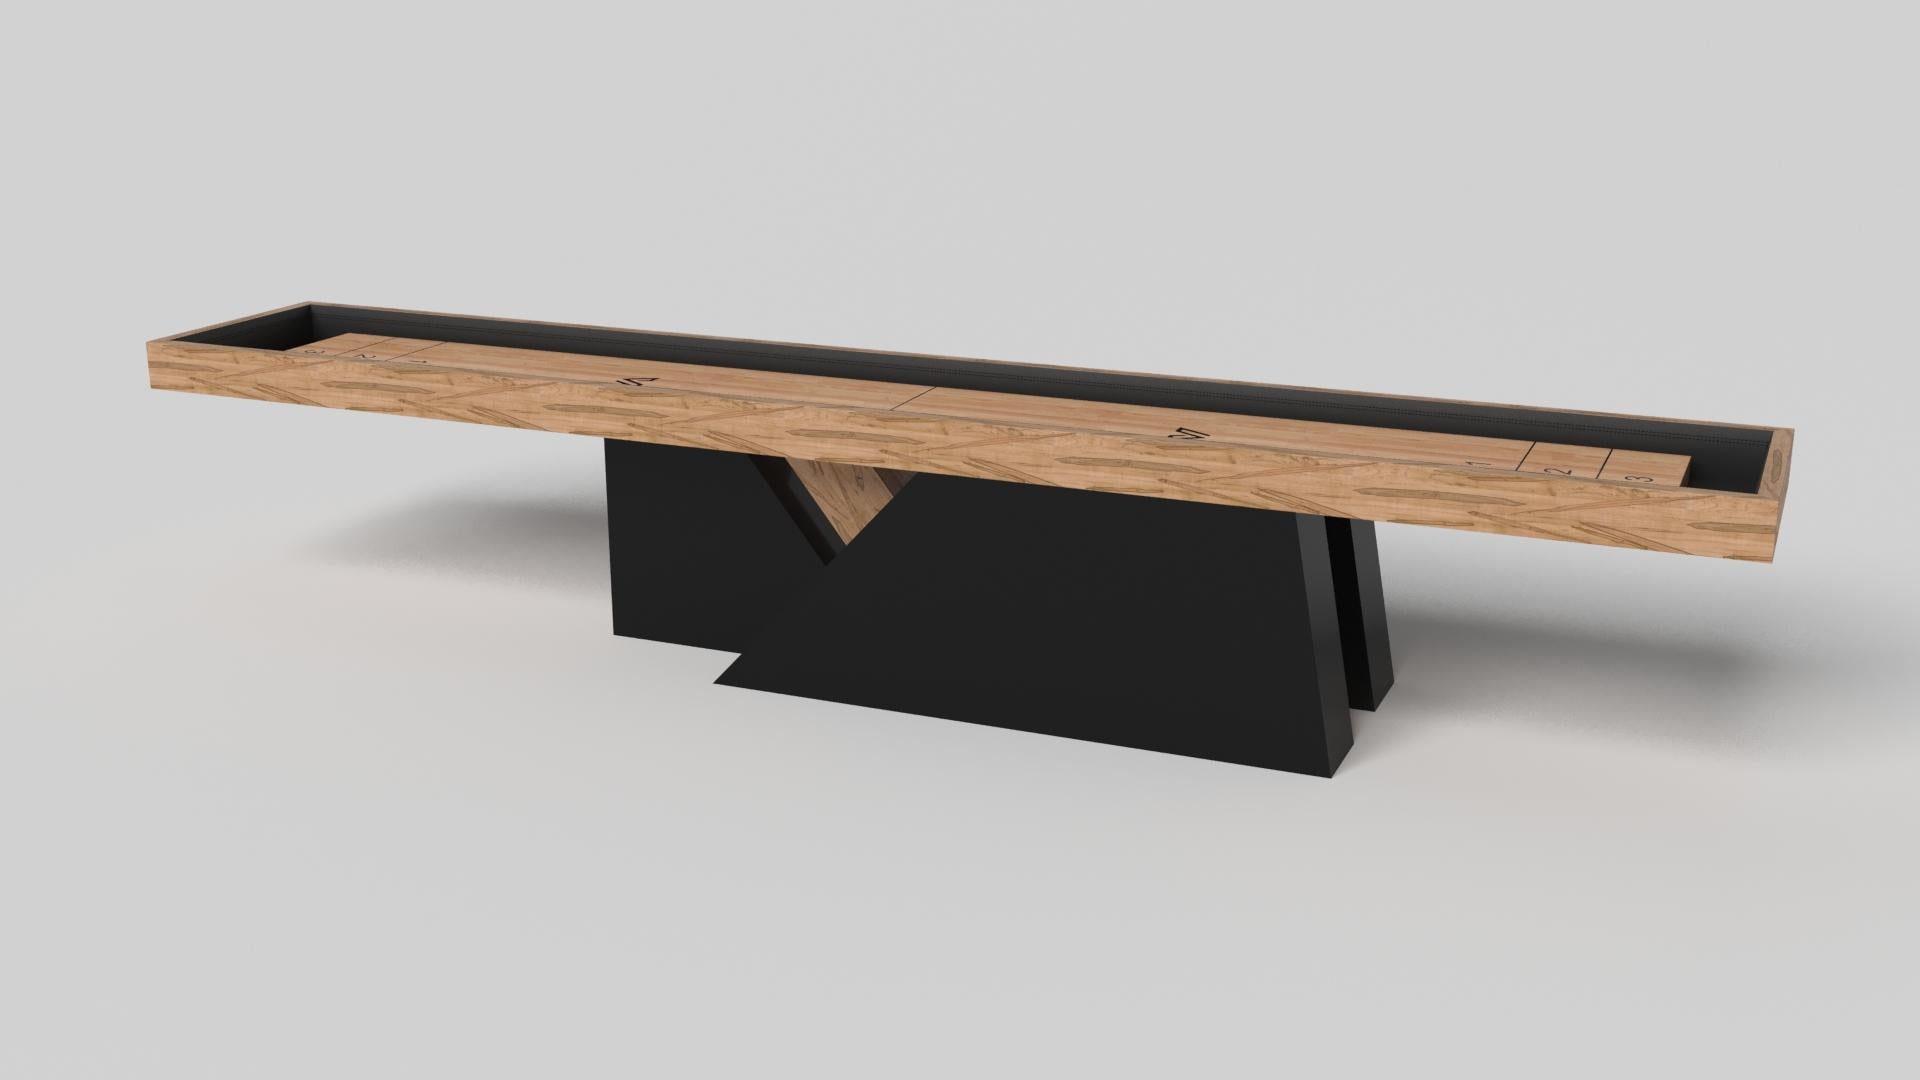 Ein asymmetrischer Sockel schafft eine frei schwebende Silhouette, die den Stilt Shuffleboard-Tisch in Chrom mit Nussbaum zu einer überzeugenden, zeitgenössischen Ergänzung für das moderne Zuhause macht. Dieser luxuriöse, handgefertigte Spieltisch